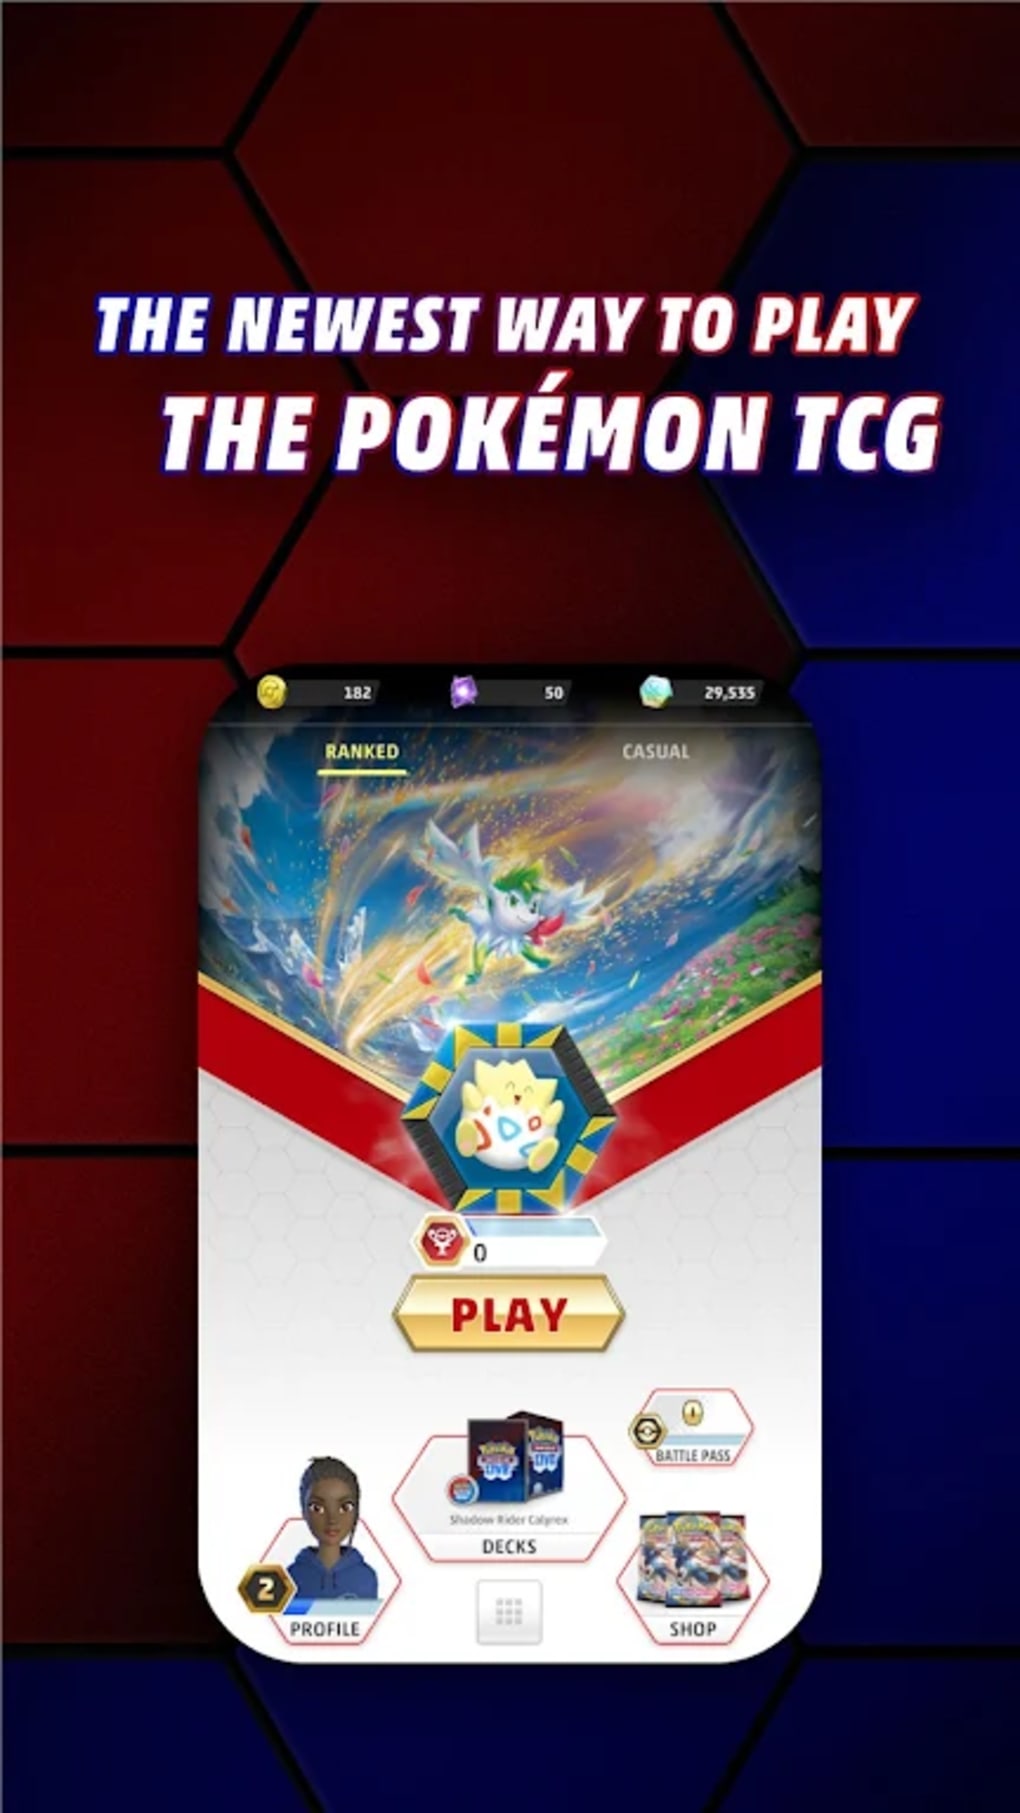 Pokémon TCG Live: versão beta do jogo de cartas online é liberada no Brasil  - Canaltech